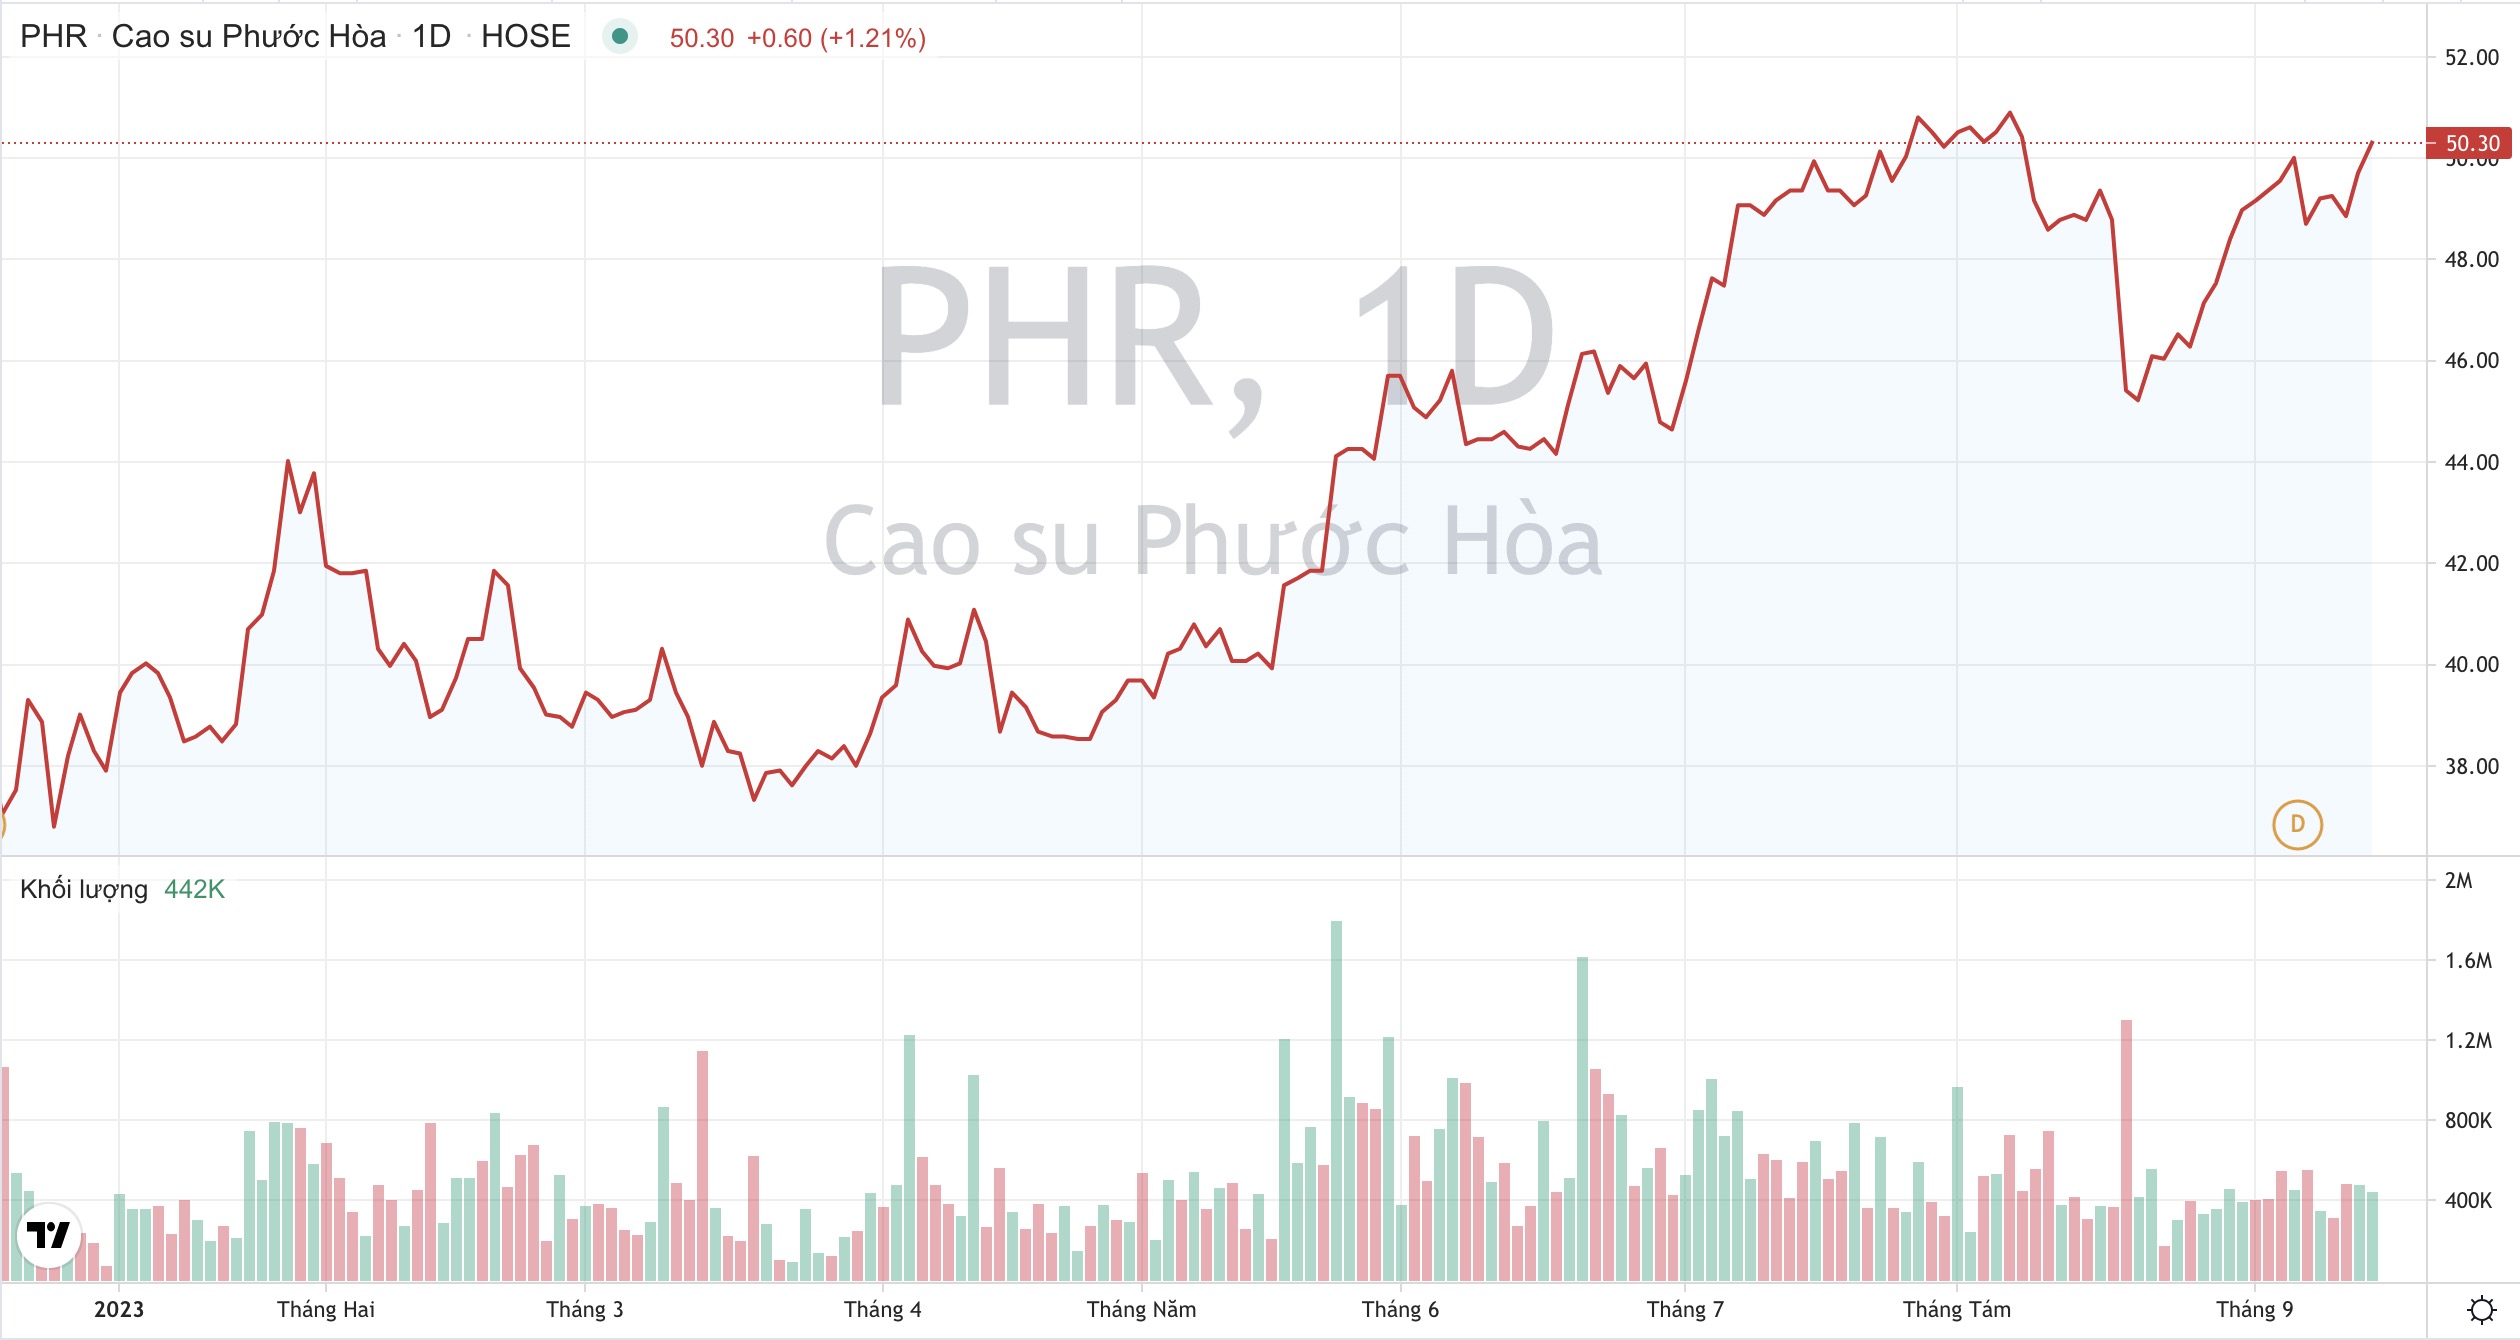 Giá cổ phiếu PHR Cao su Phước Hoà